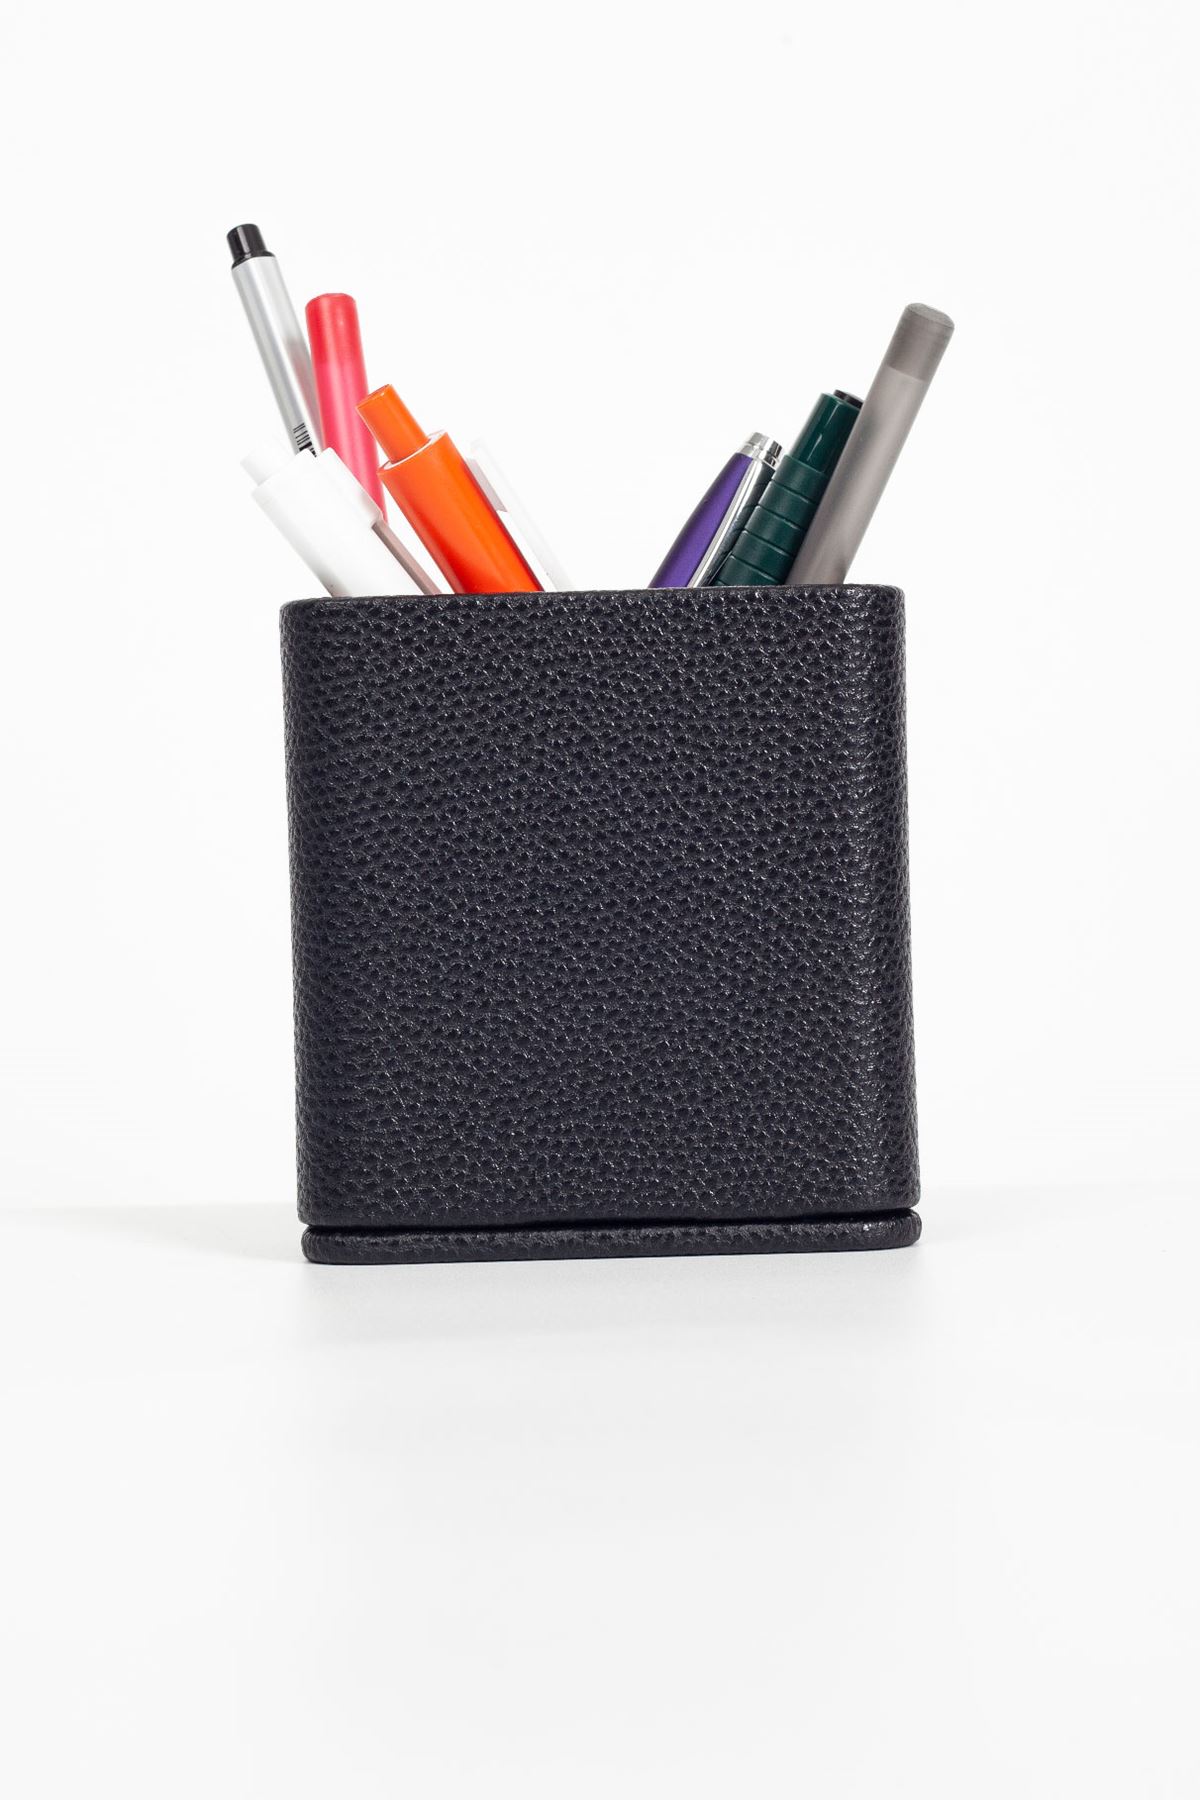 Desktop Leather Wooden Detailed Pen Holder Black